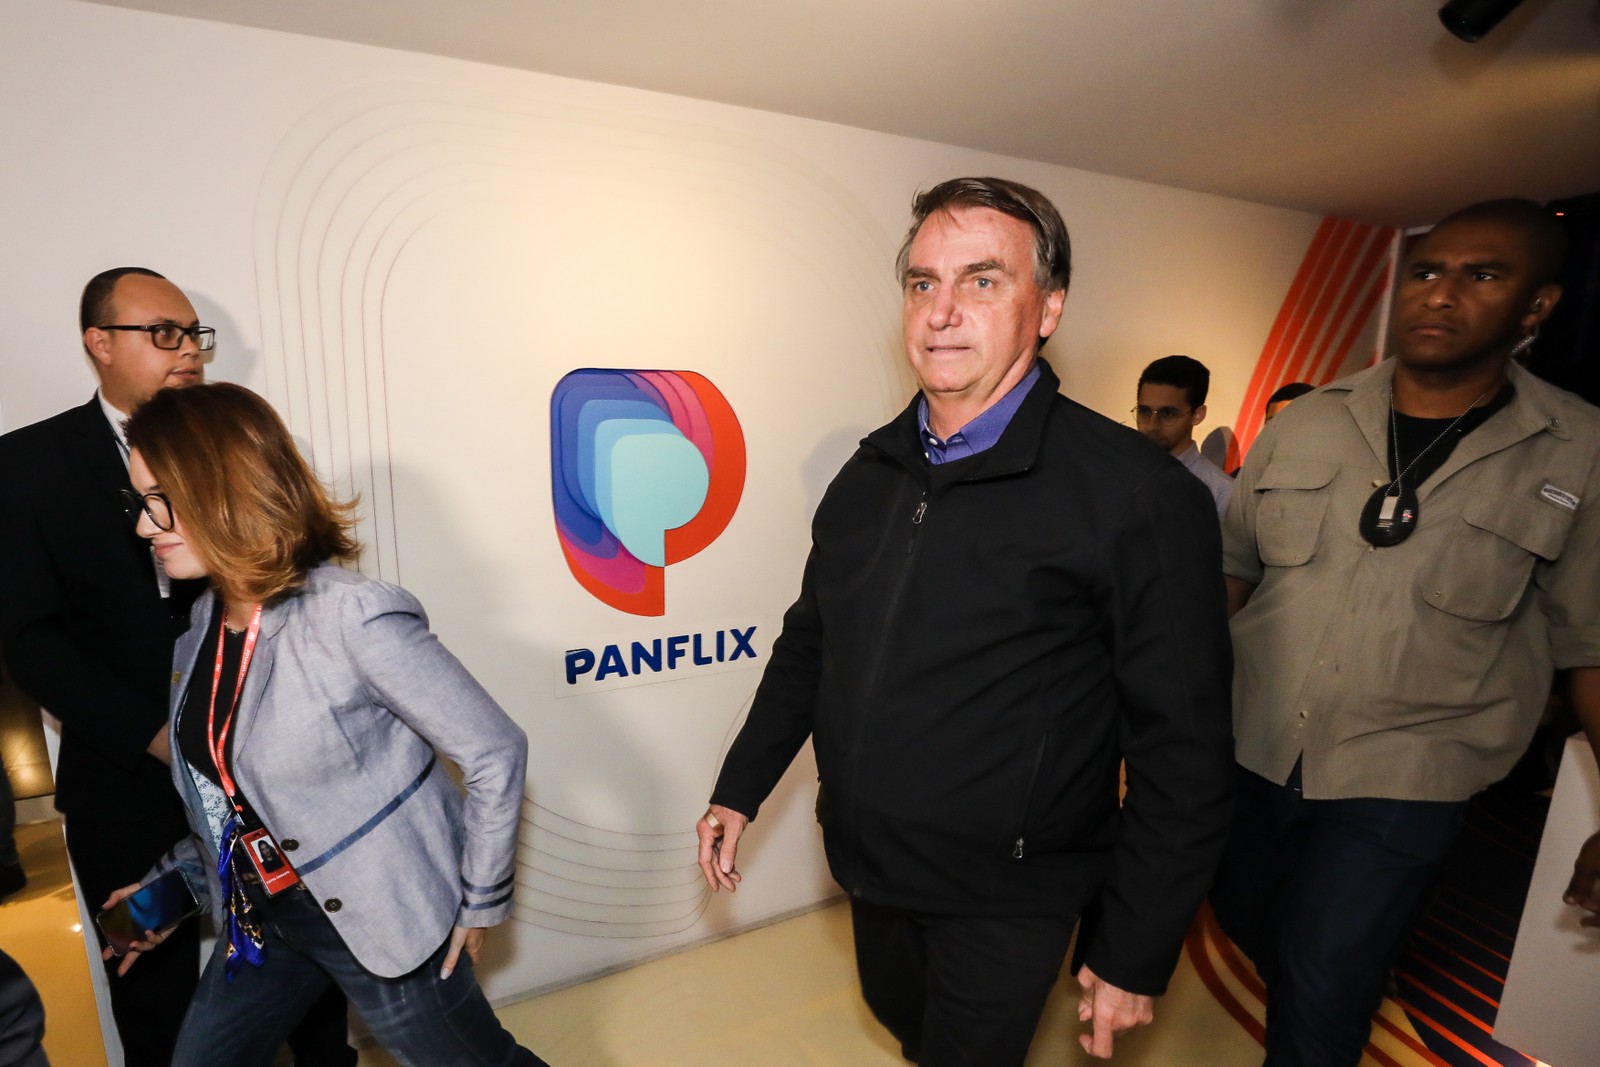 26/08/2022 - "Foram centenas de vulnerabilidades encontradas (nas urnas)", disse Bolsonaro em entrevista ao programa Pânico — Foto: Divulgação